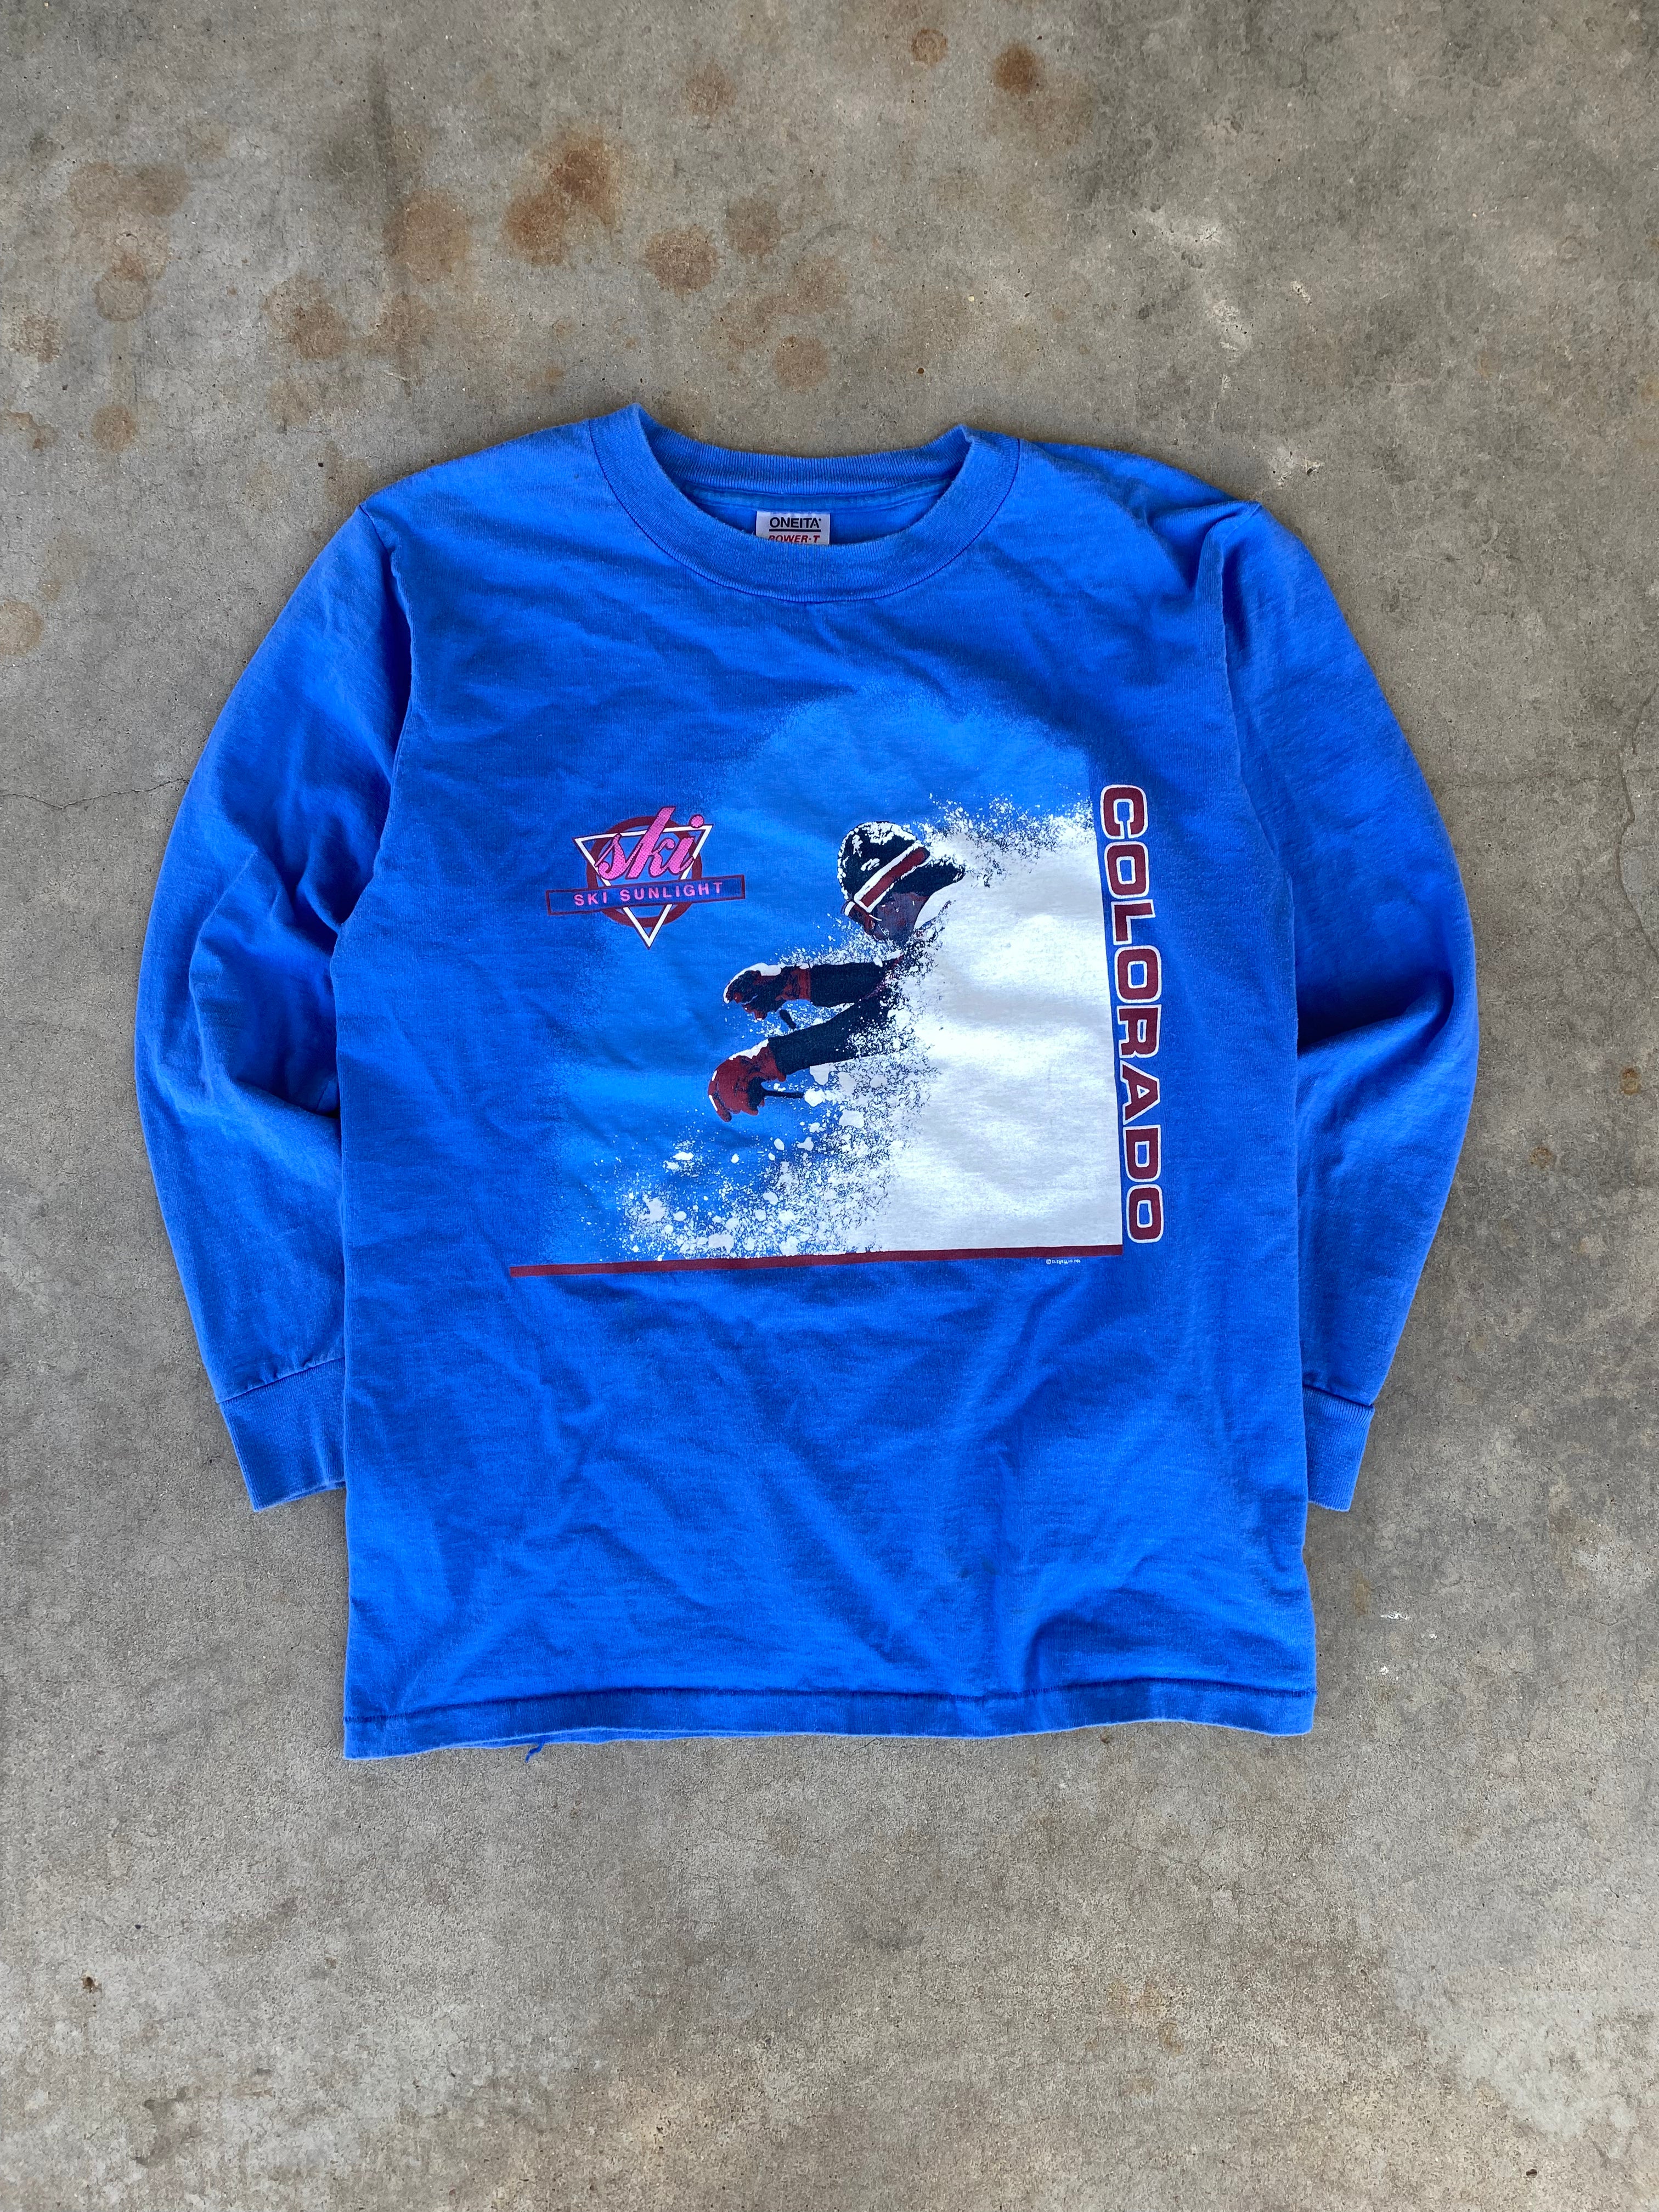 1990s Colorado “Ski Sunlight” Longsleeve T-Shirt (M)